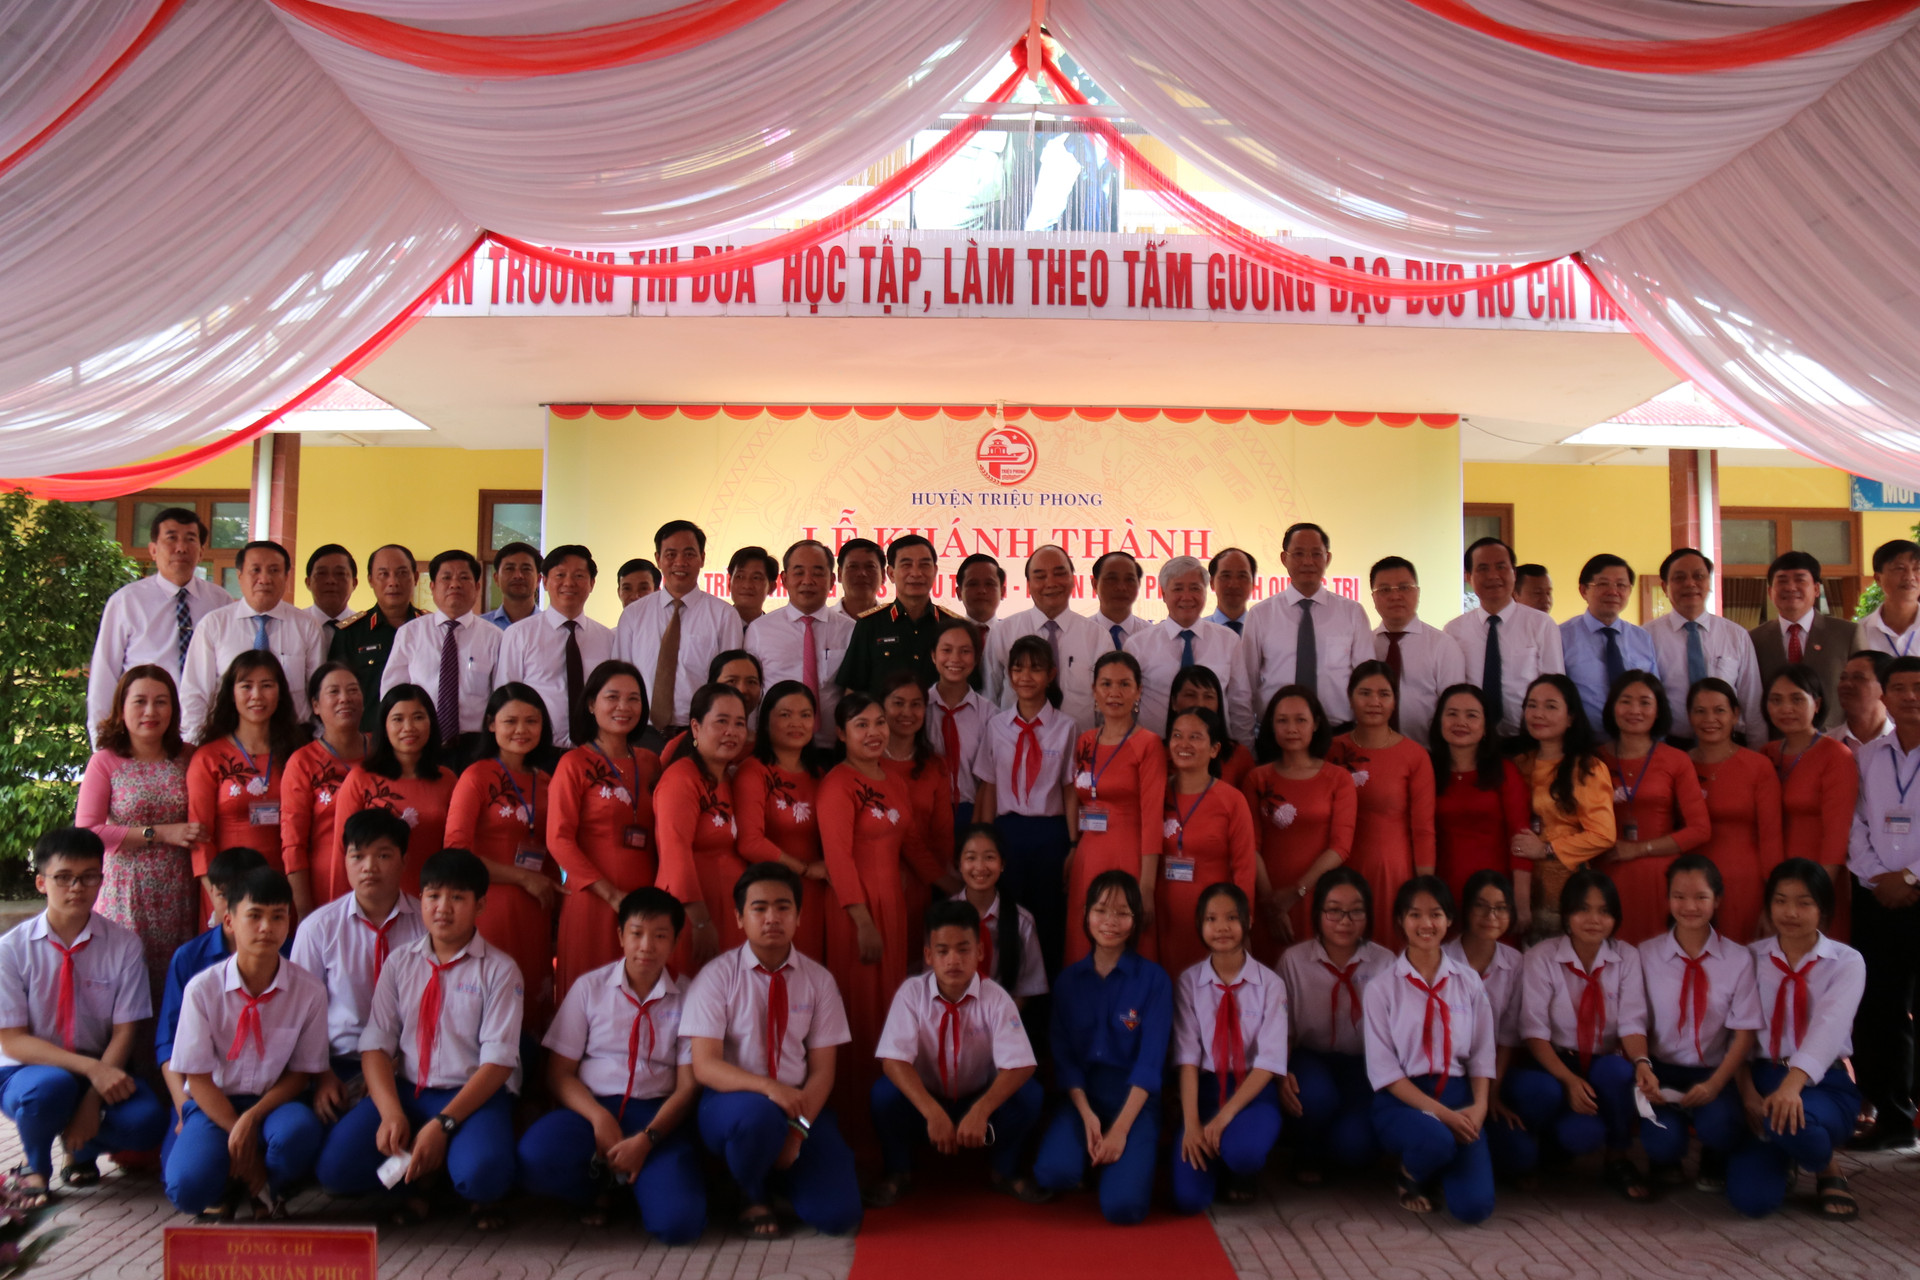 Lãnh đạo Đảng, Nhà nước; lãnh đạo nhiều Bộ, ngành Trung ương và lãnh đạo địa phương chụp ảnh lưu niệm cùng thầy cô giáo, học sinh trường THCS Triệu Thành.